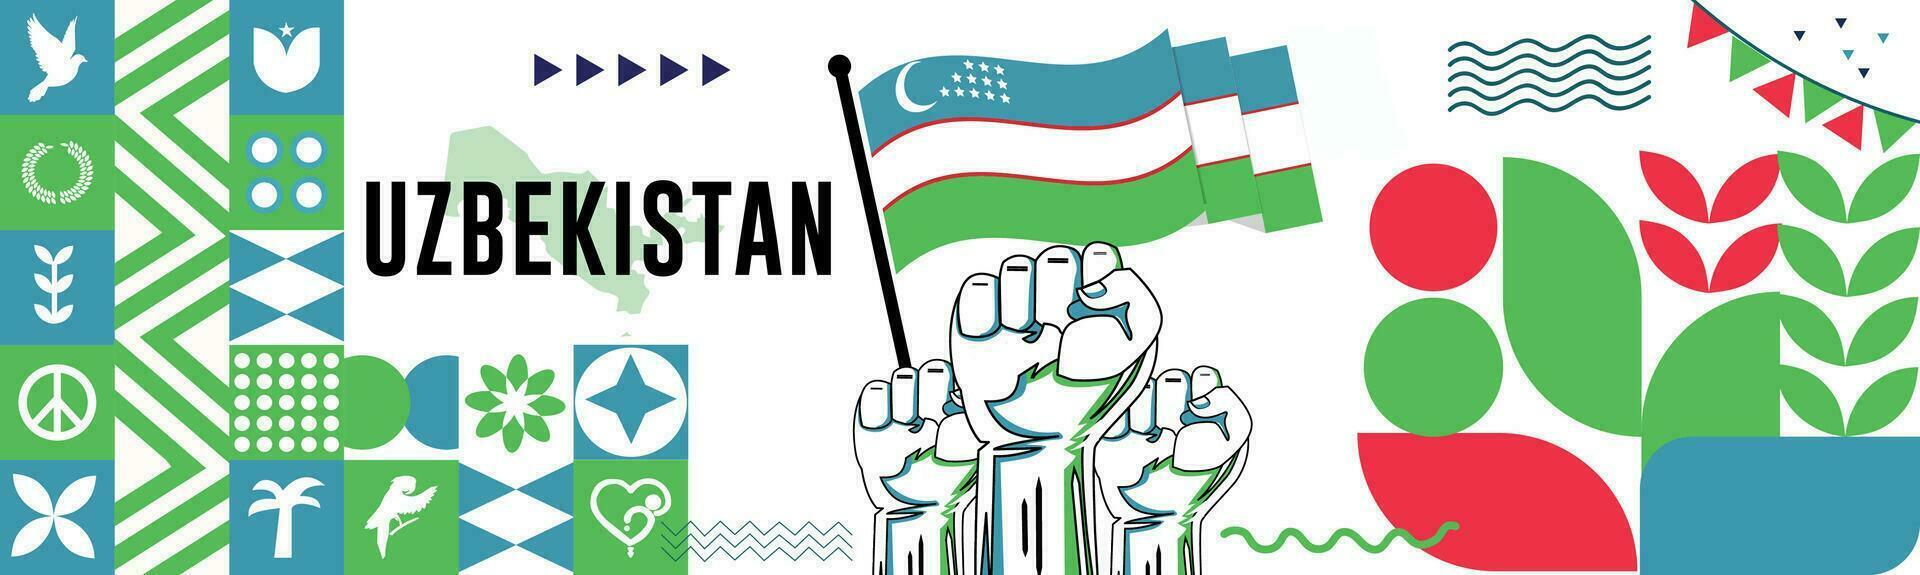 Oezbekistan nationaal dag banier met kaart, vlag kleuren thema achtergrond en meetkundig abstract retro modern kleurrijk ontwerp met verheven handen of vuisten. vector